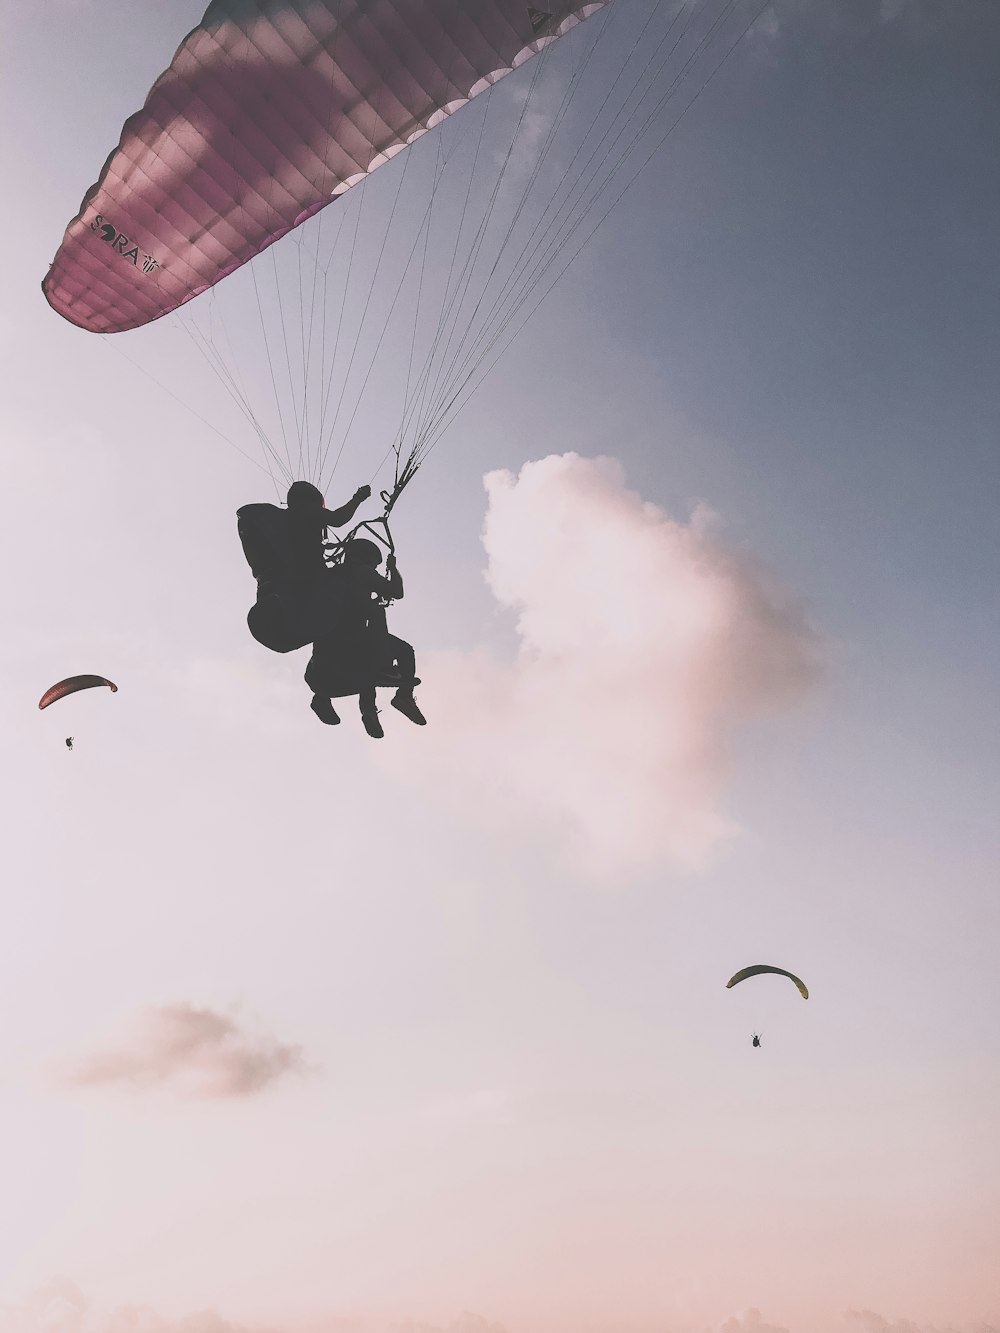 Fotografía de la silueta de dos personas saltando en paracaídas